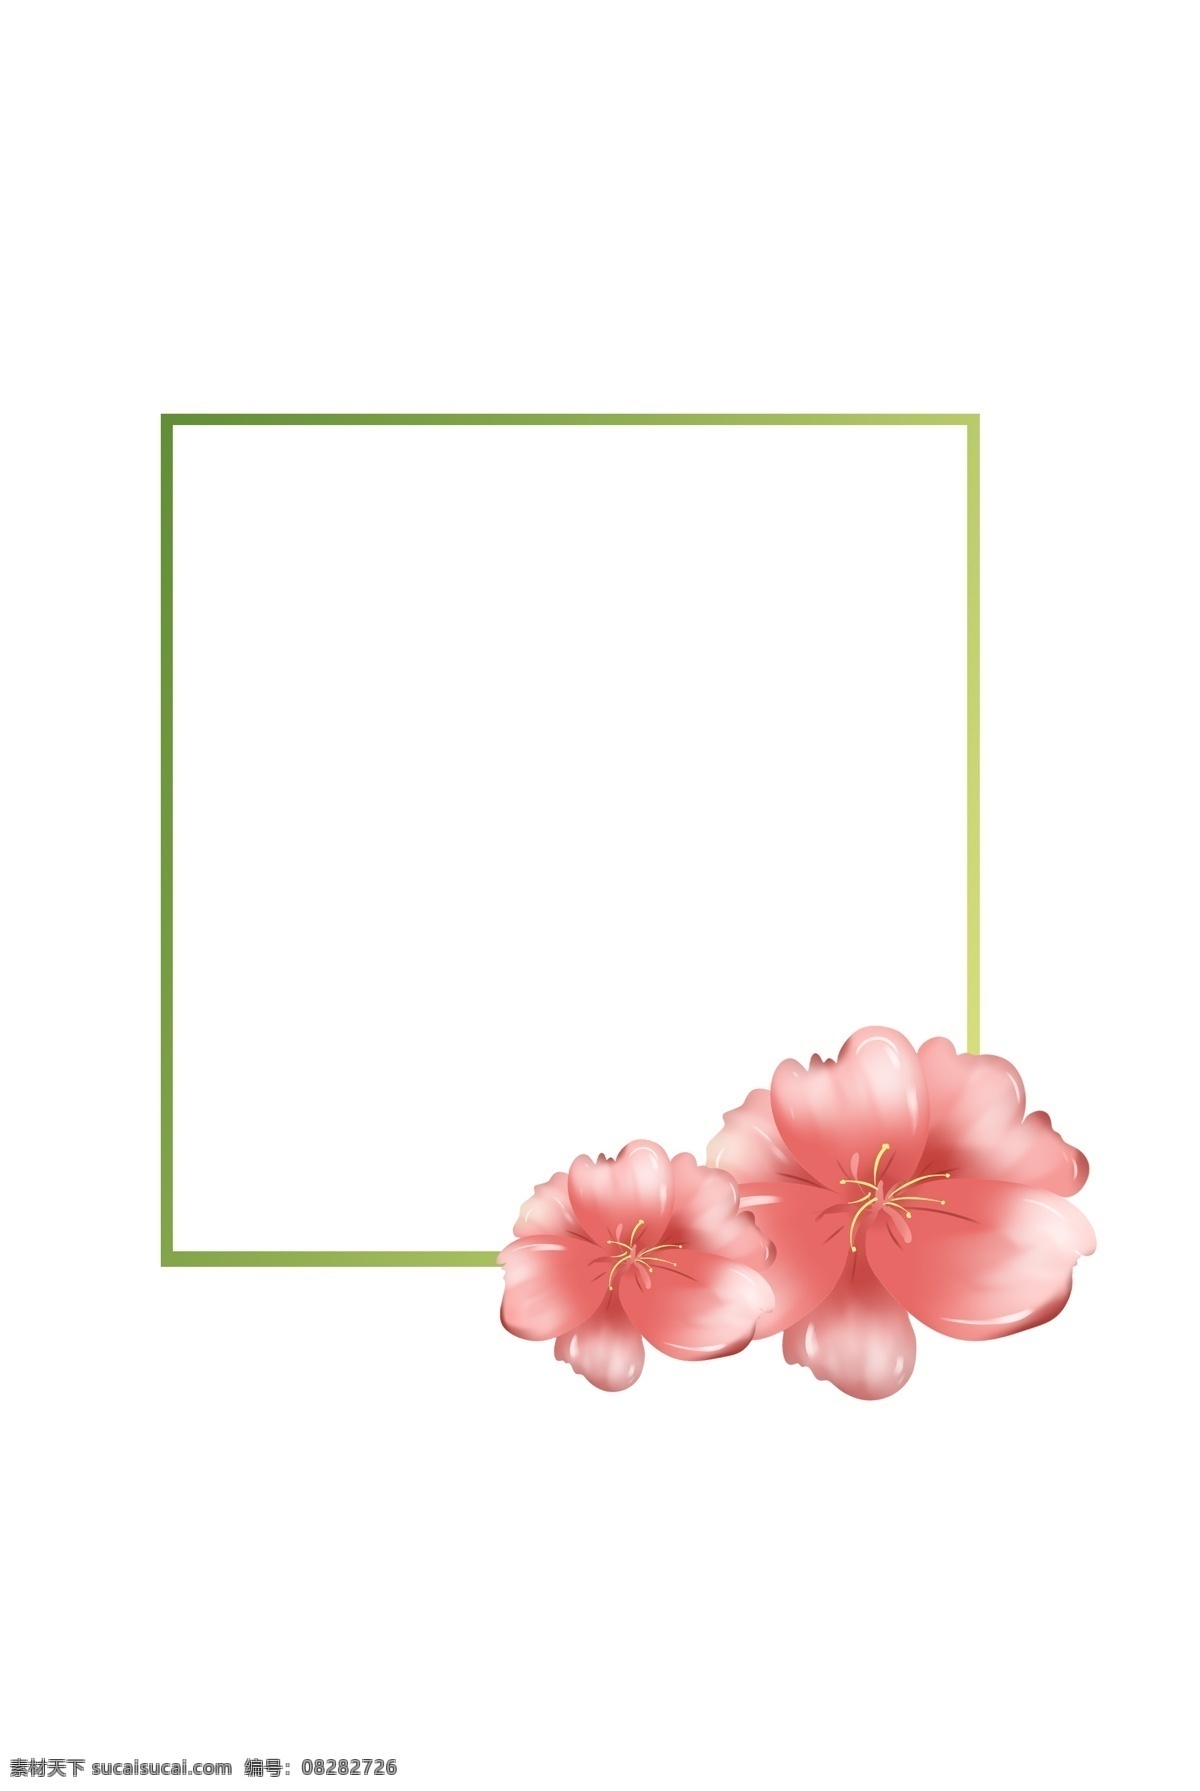 粉色 花瓣 手绘 装饰 边框 植物边框 花卉图案 手绘边框 美丽的花 大叶子 大自然 小清新 树叶子 叶子 夏天 插画 春天 植物